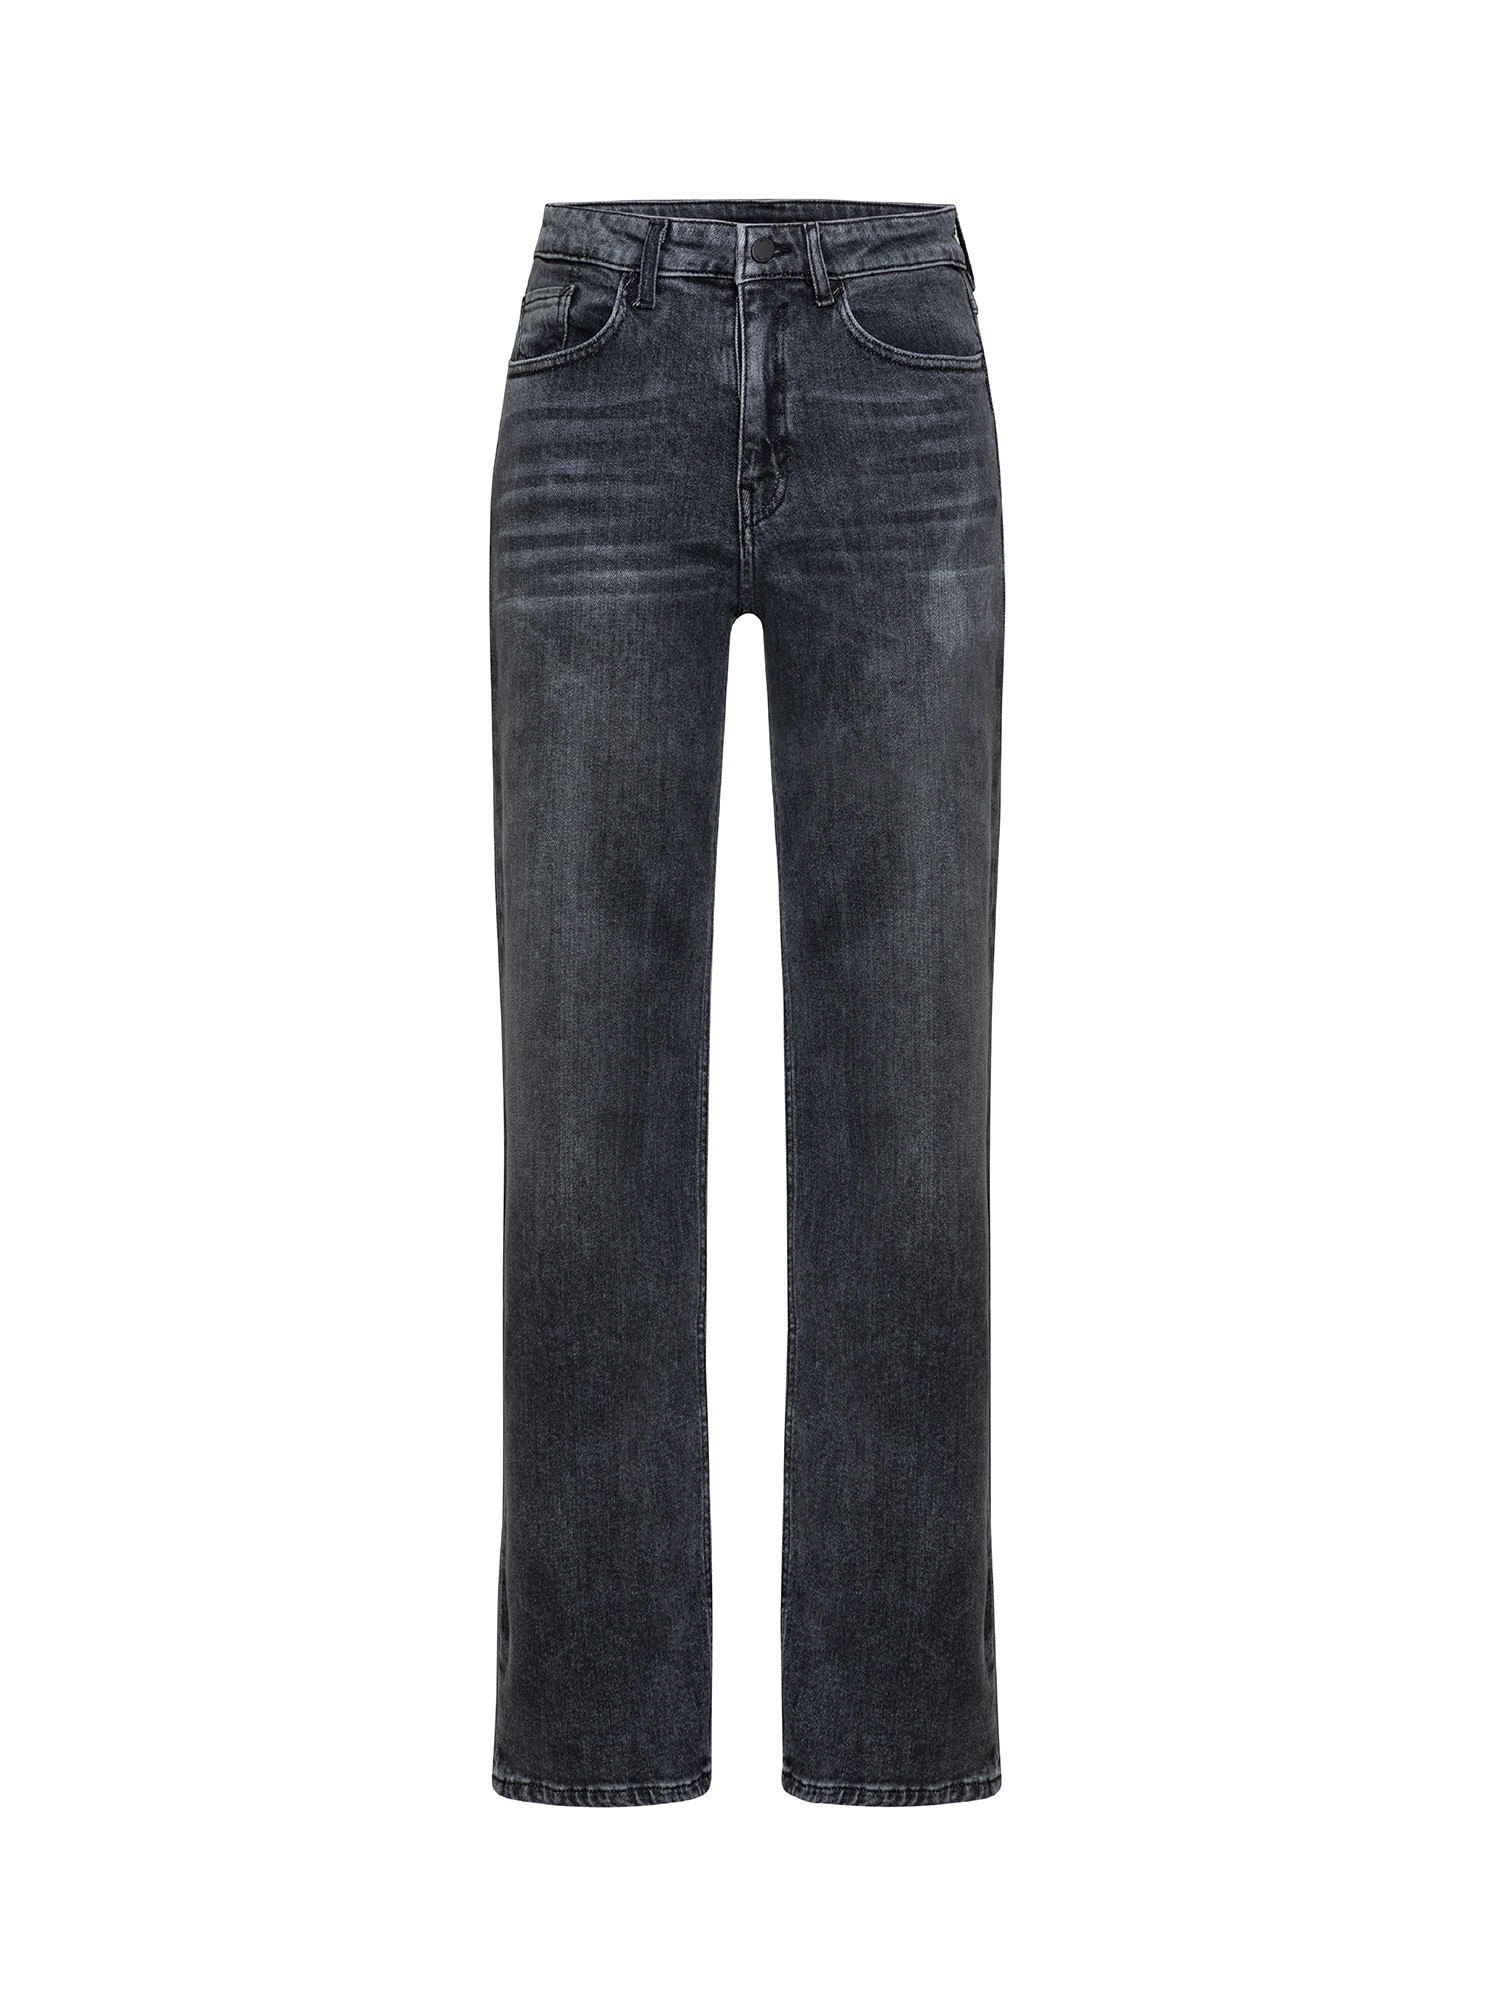 Esprit - Five pocket jeans, Dark Grey, large image number 0